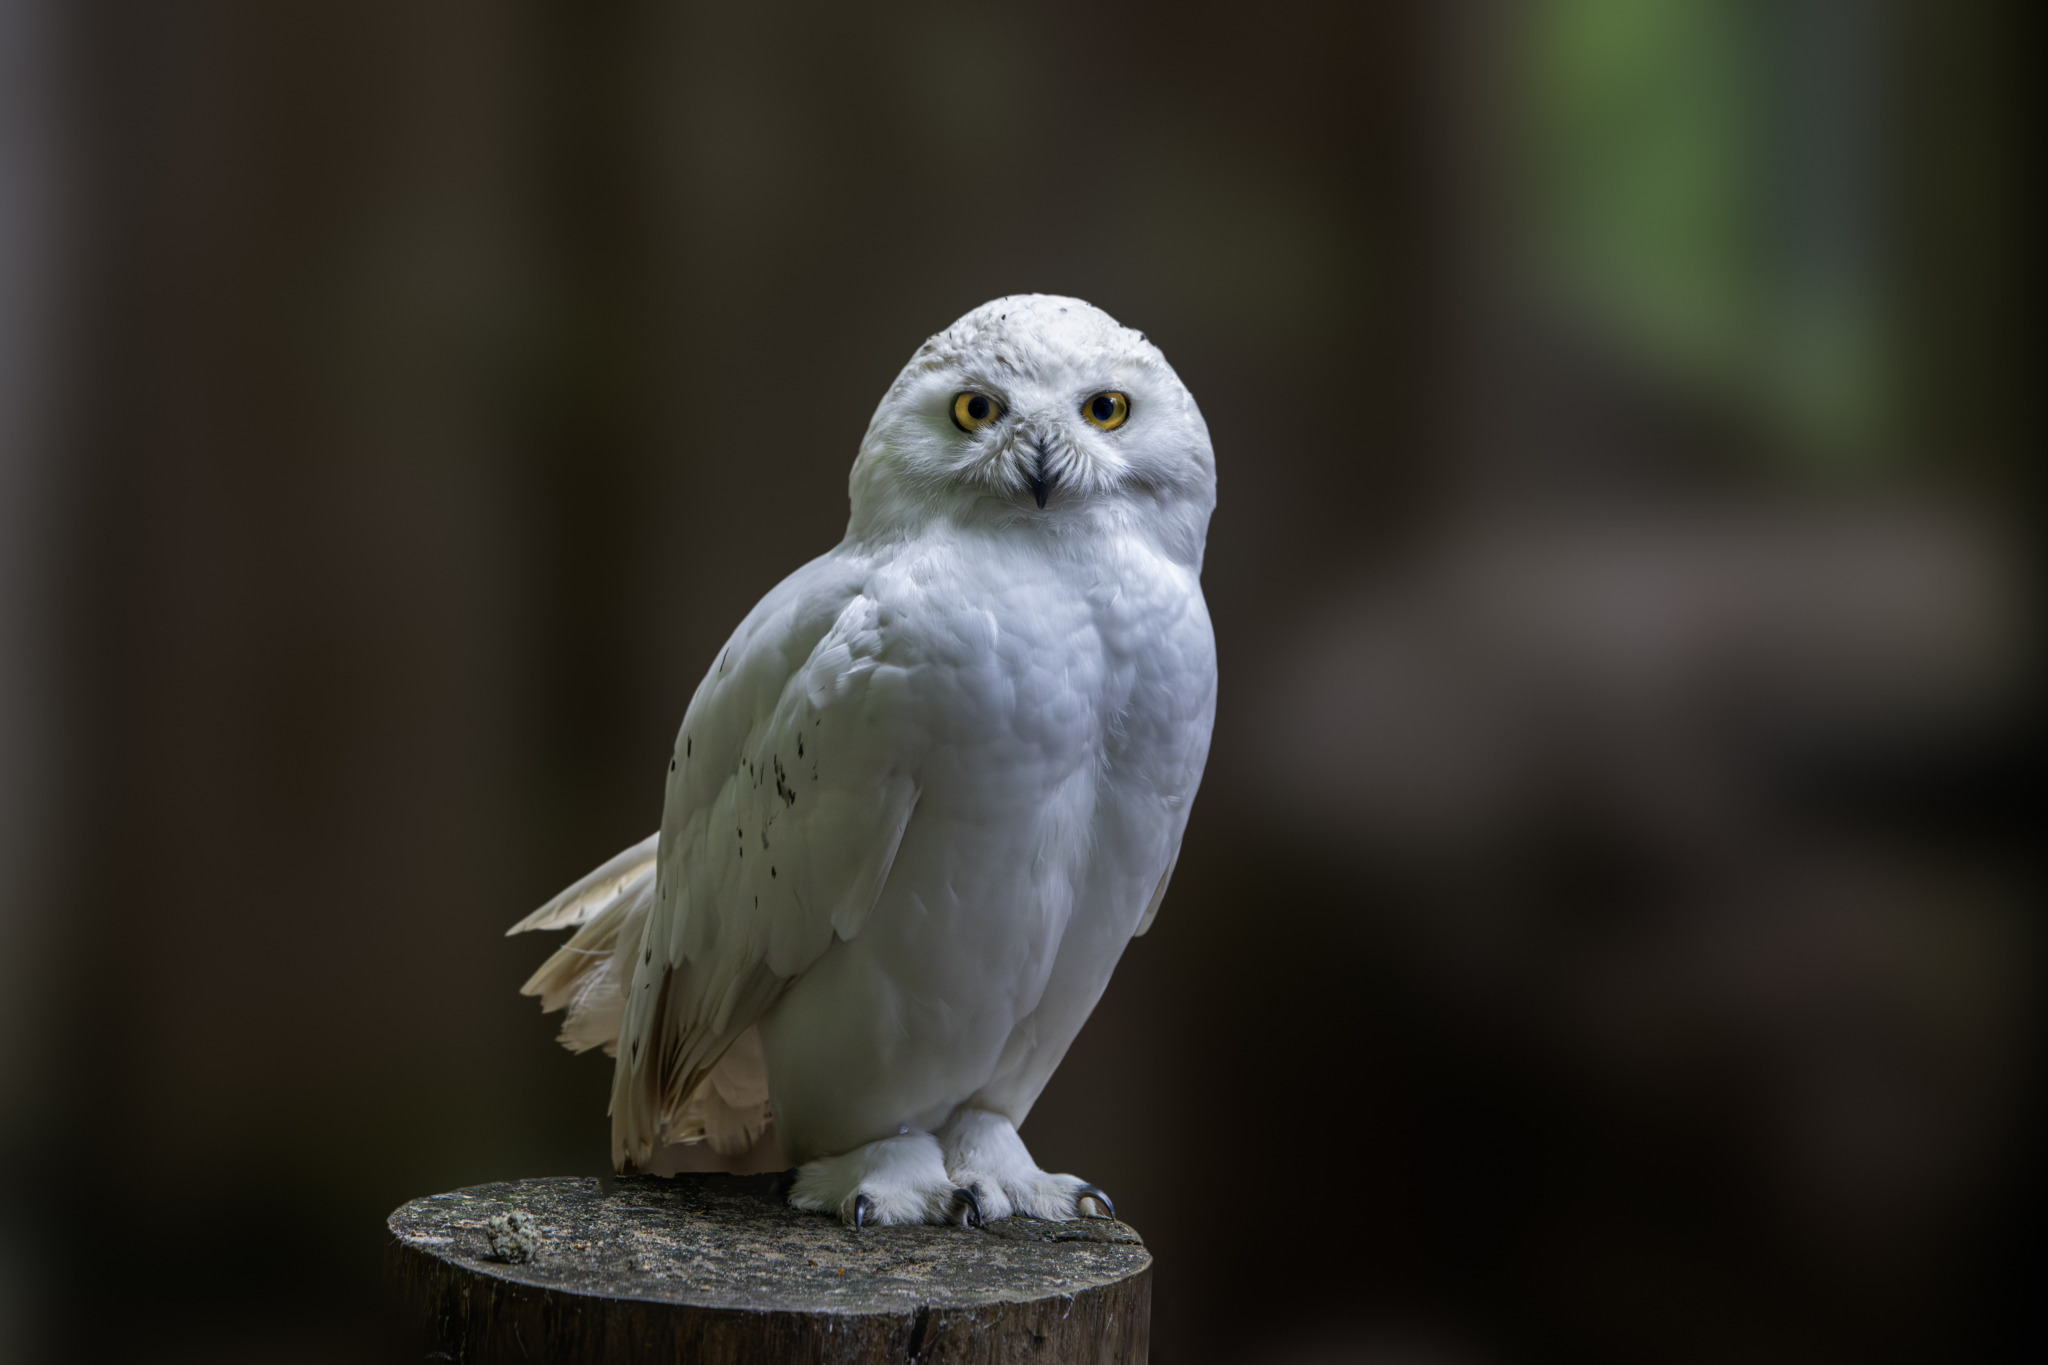 https://pixabay.com/photos/nature-animal-beak-bird-8805085/